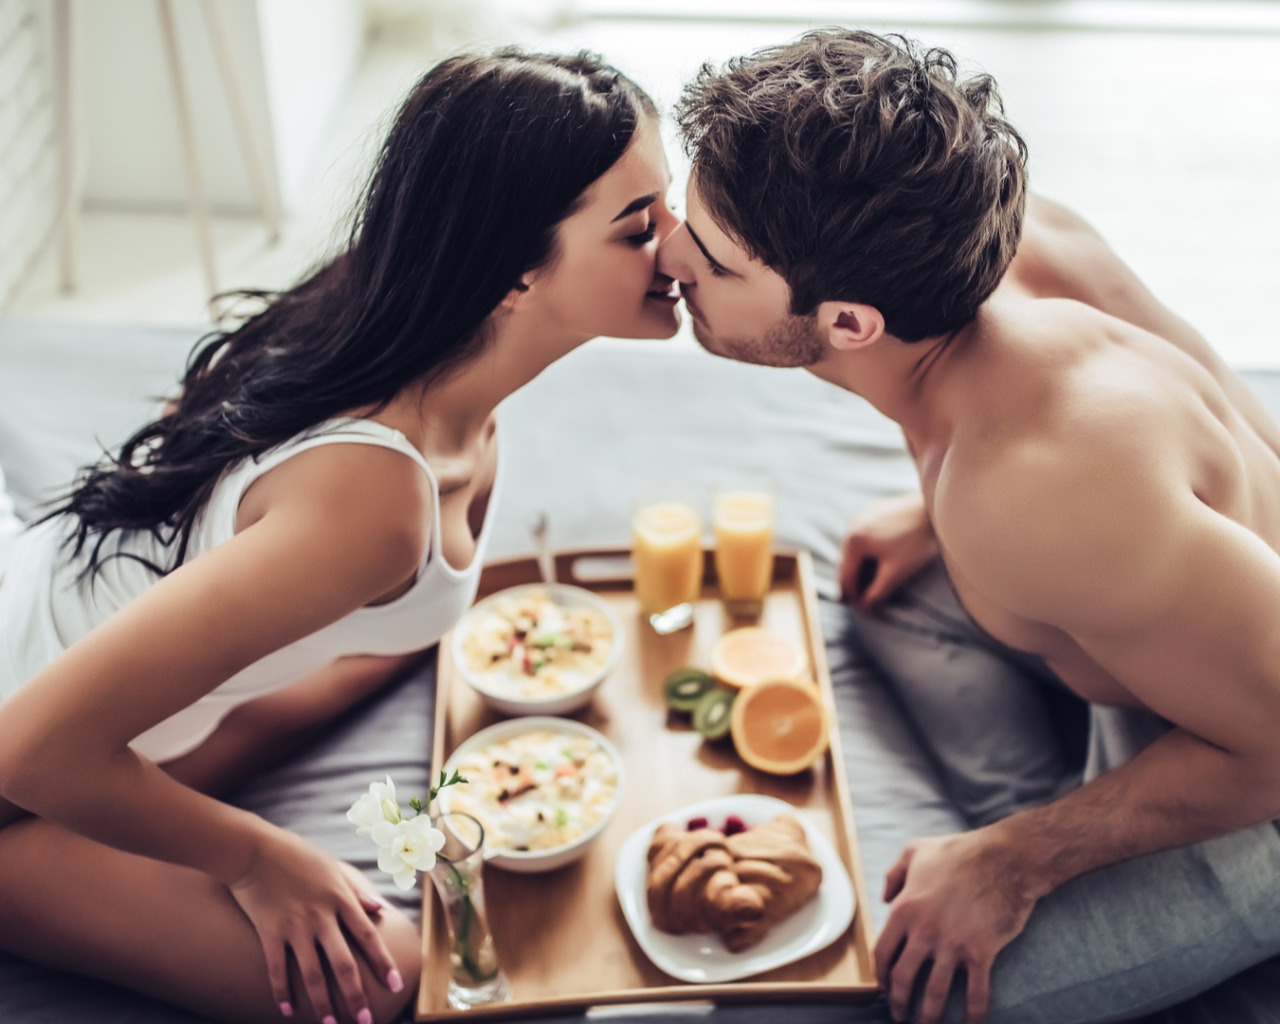 Молодые подружки отблагодарили друга групповым сексом за романтический завтрак в постель